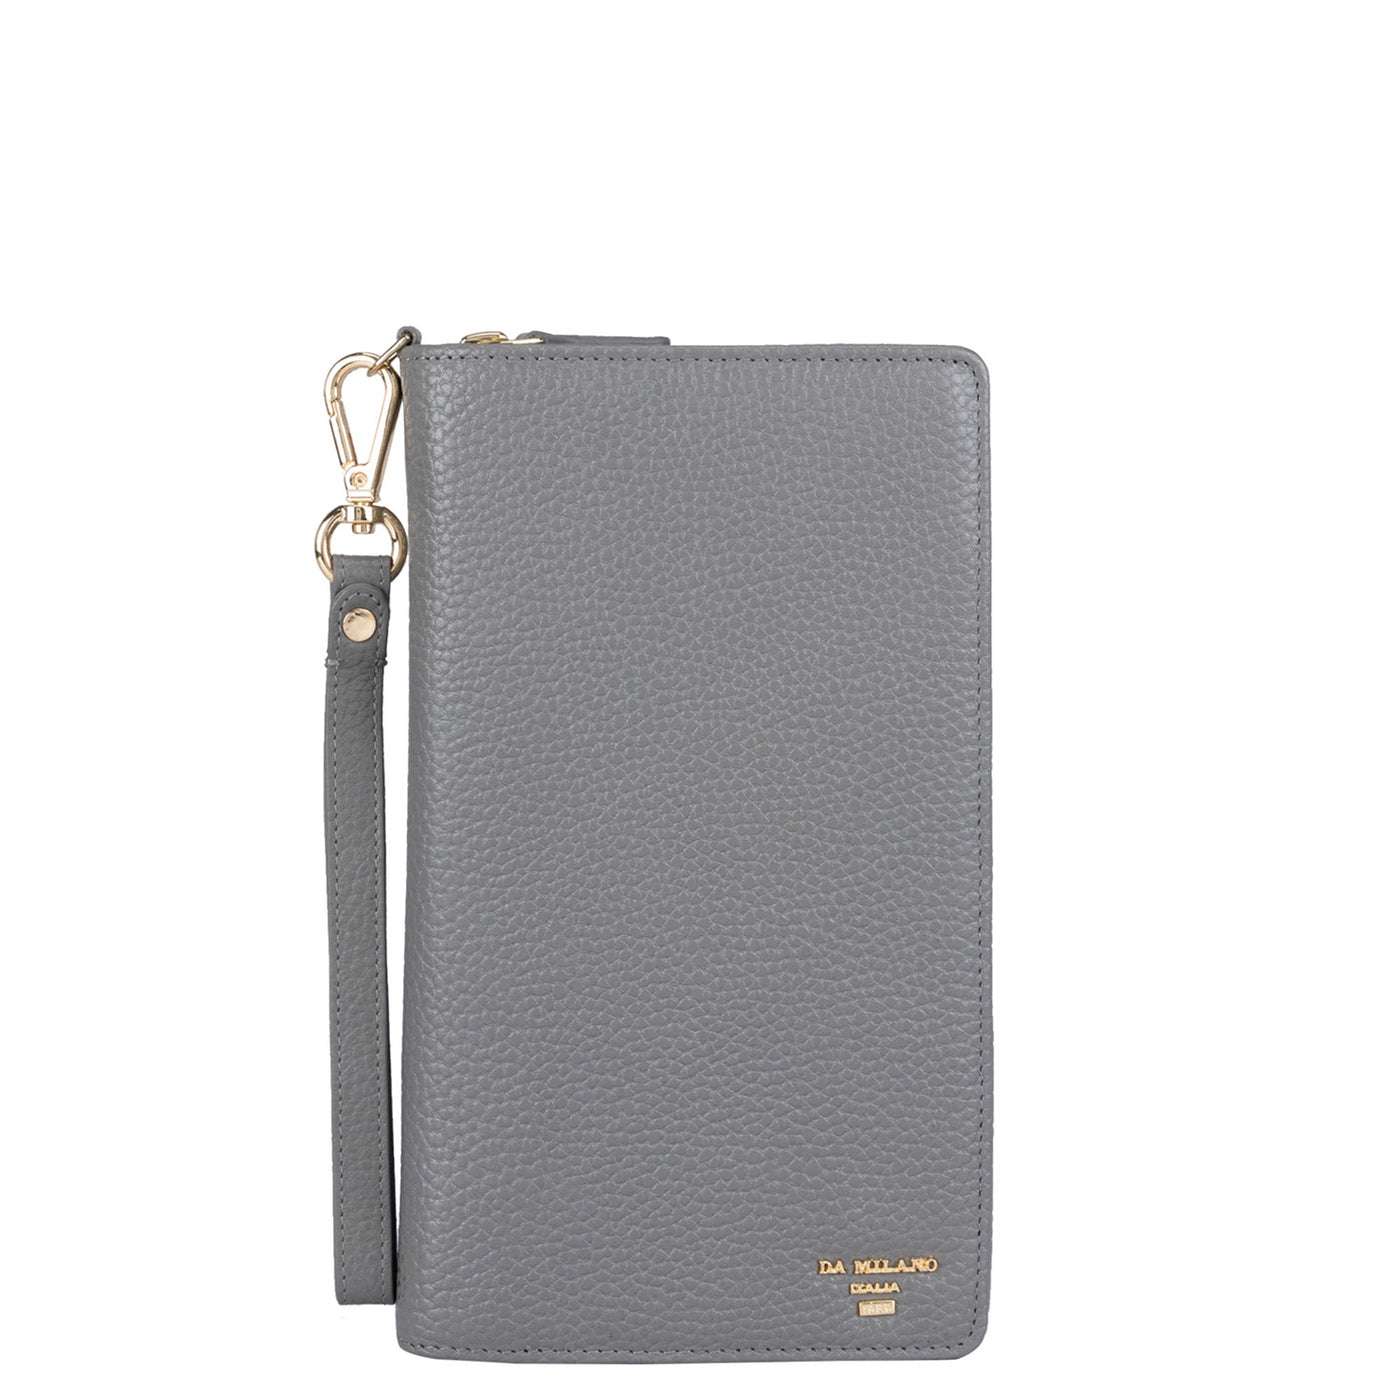 Wax Leather Passport Case - Grey